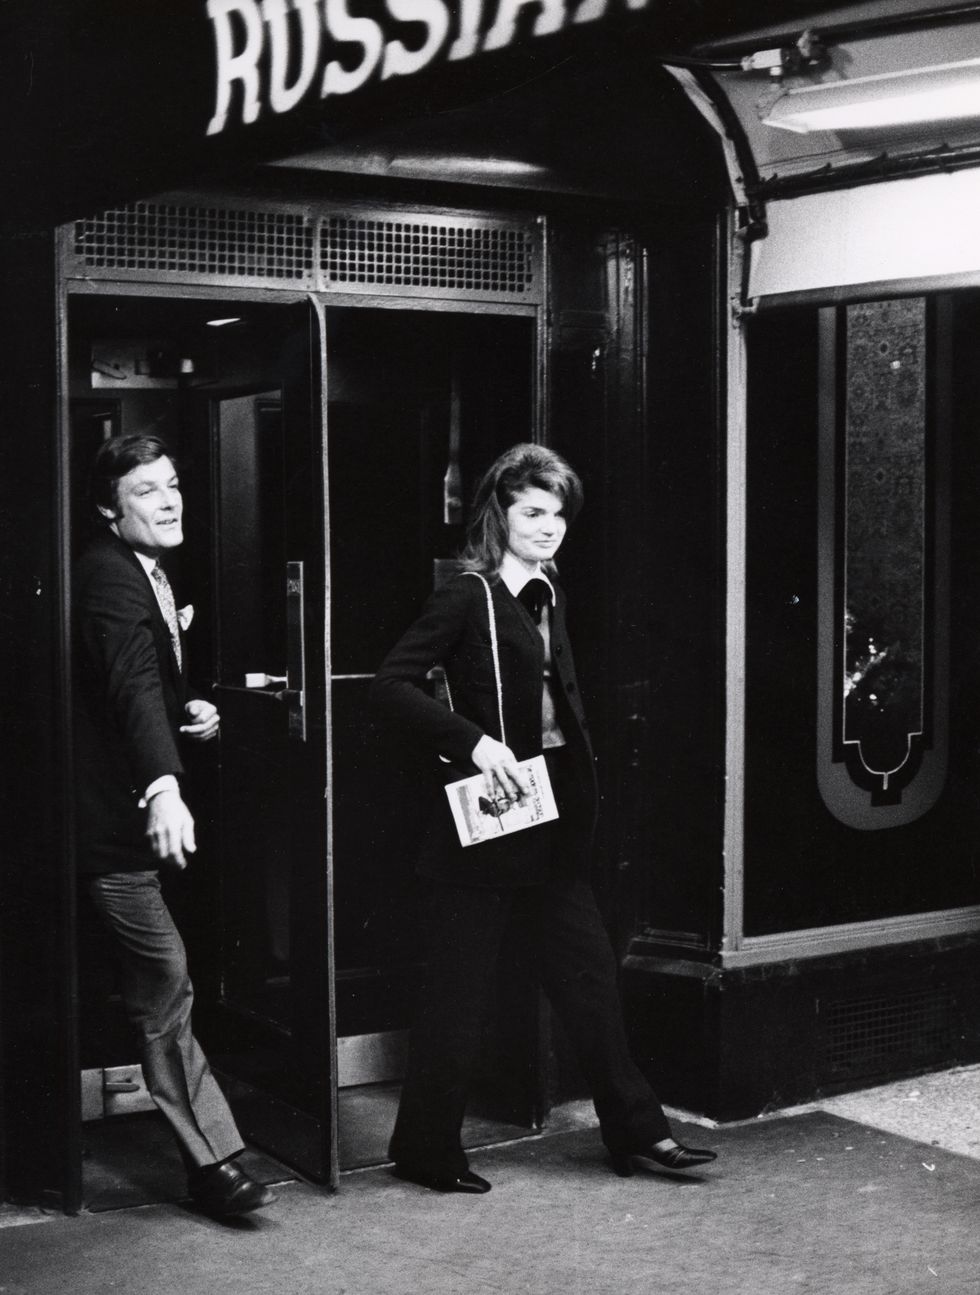 jackie onassis sightings in new york city december 1, 1971